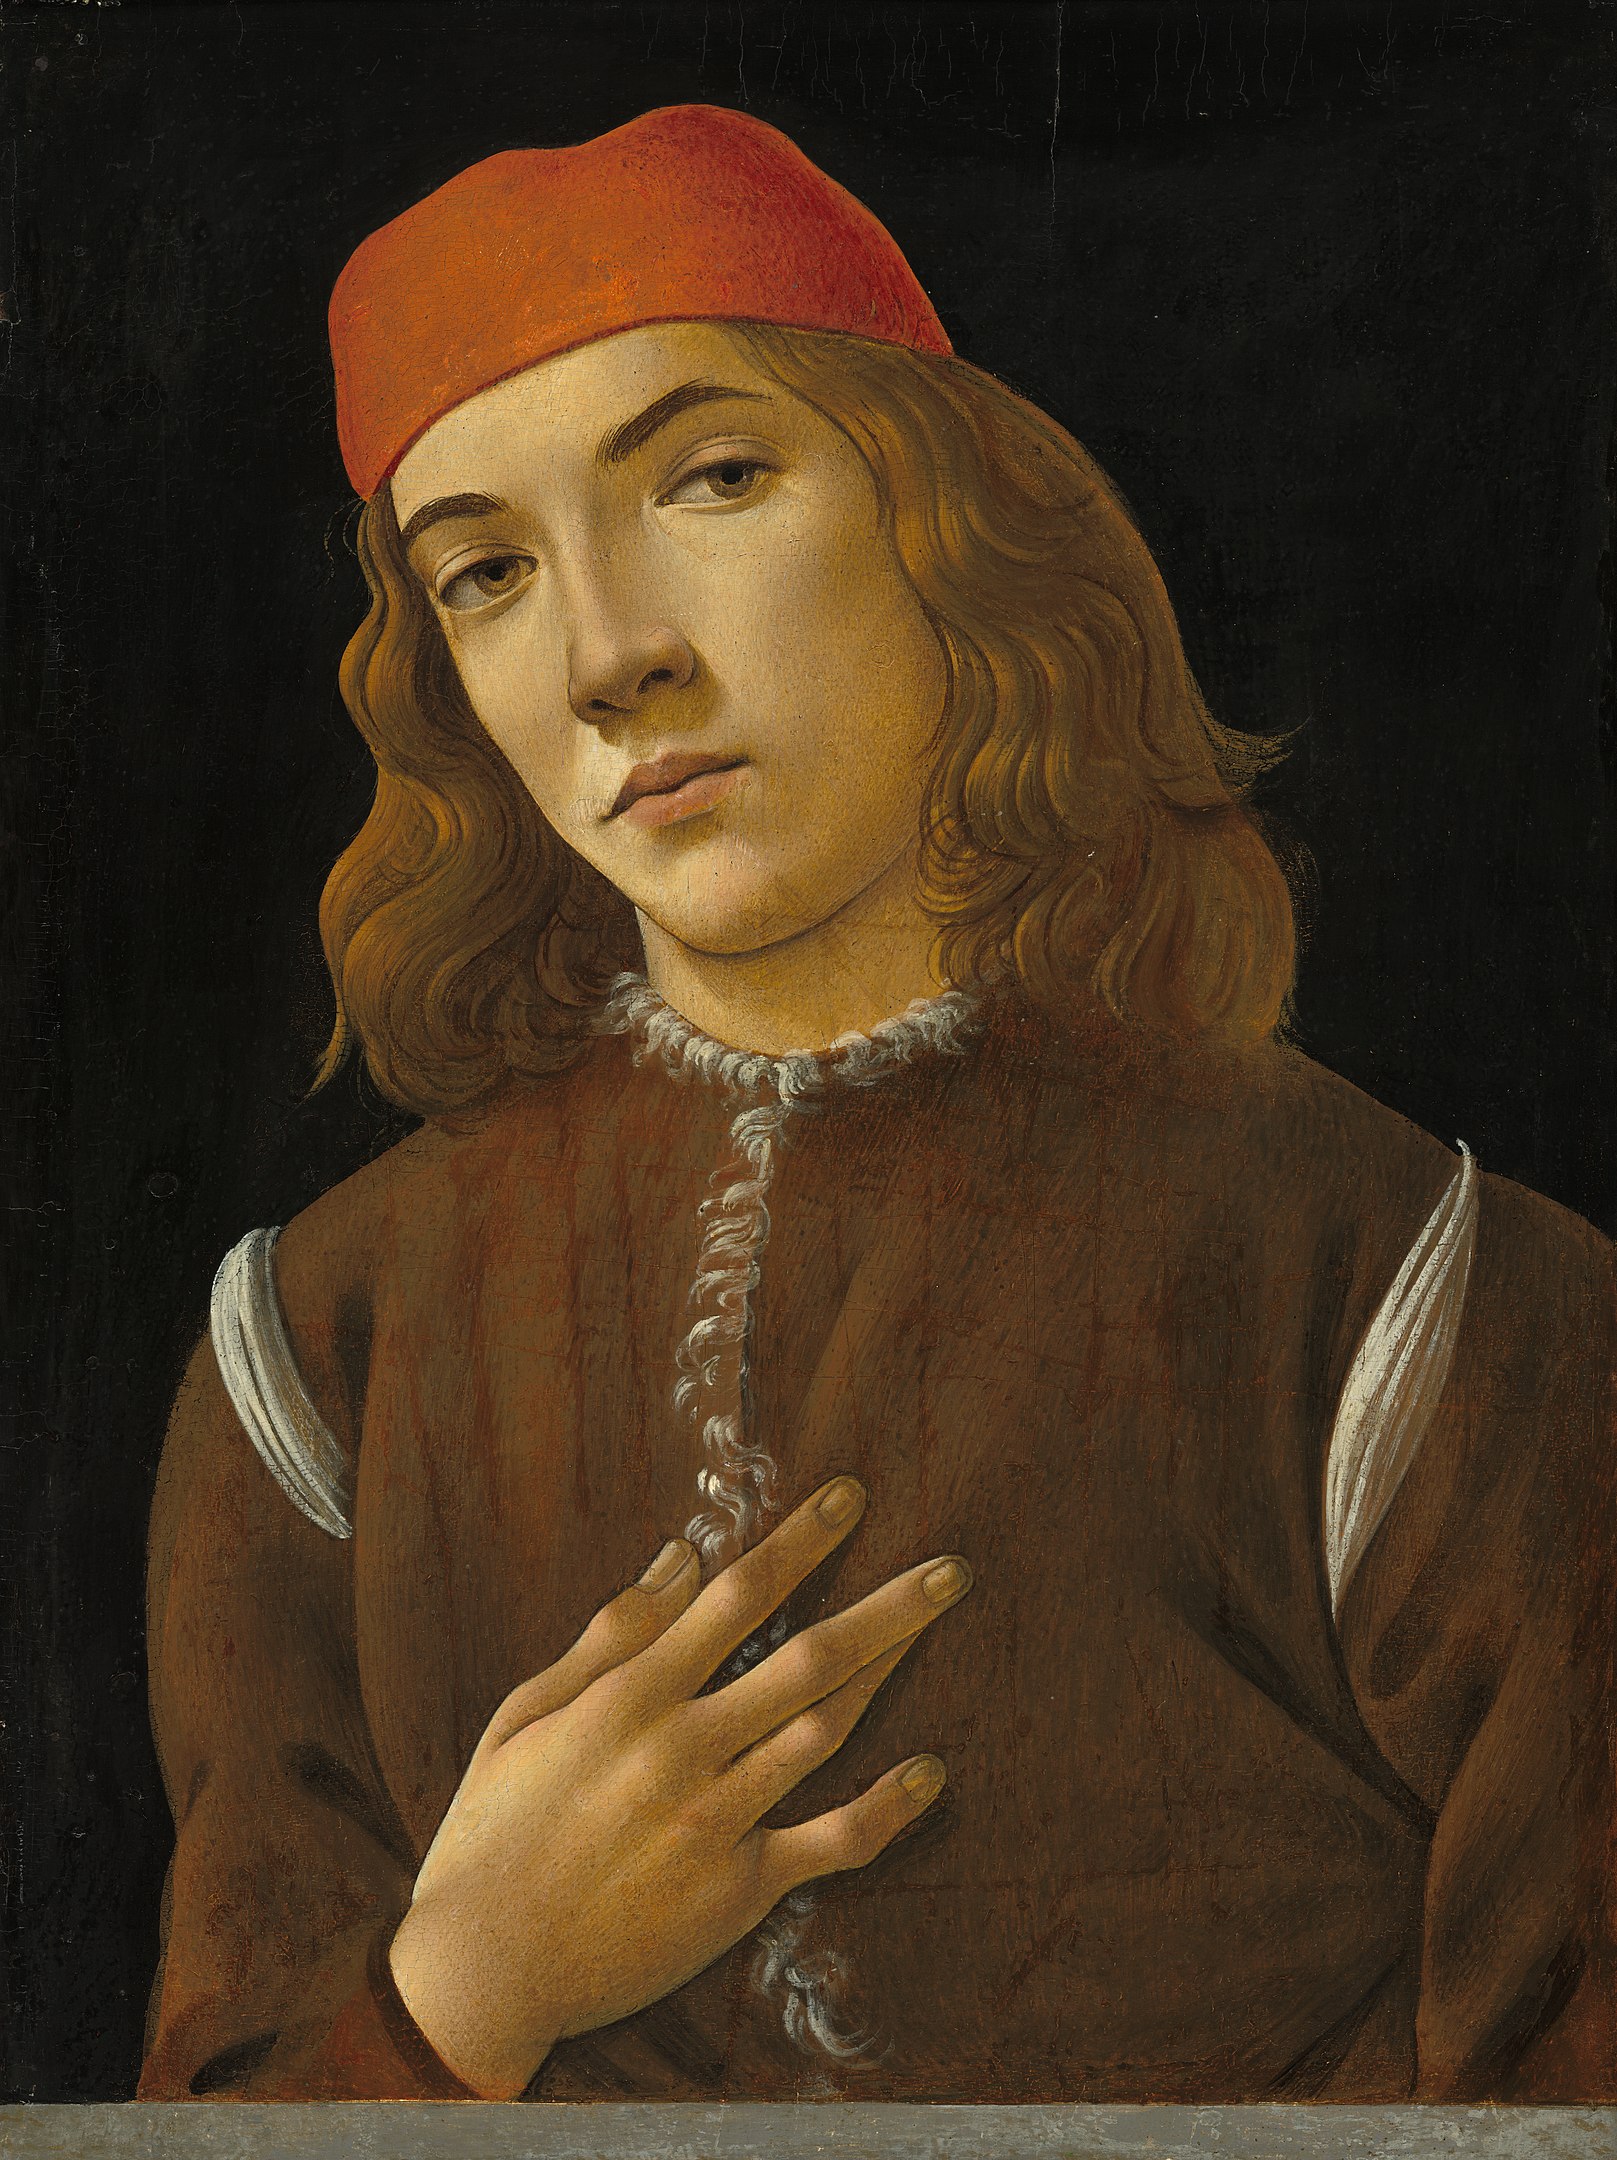 Ritratto di giovane by Sandro Botticelli - 1483 circa - 43,5 x 46,2 cm 